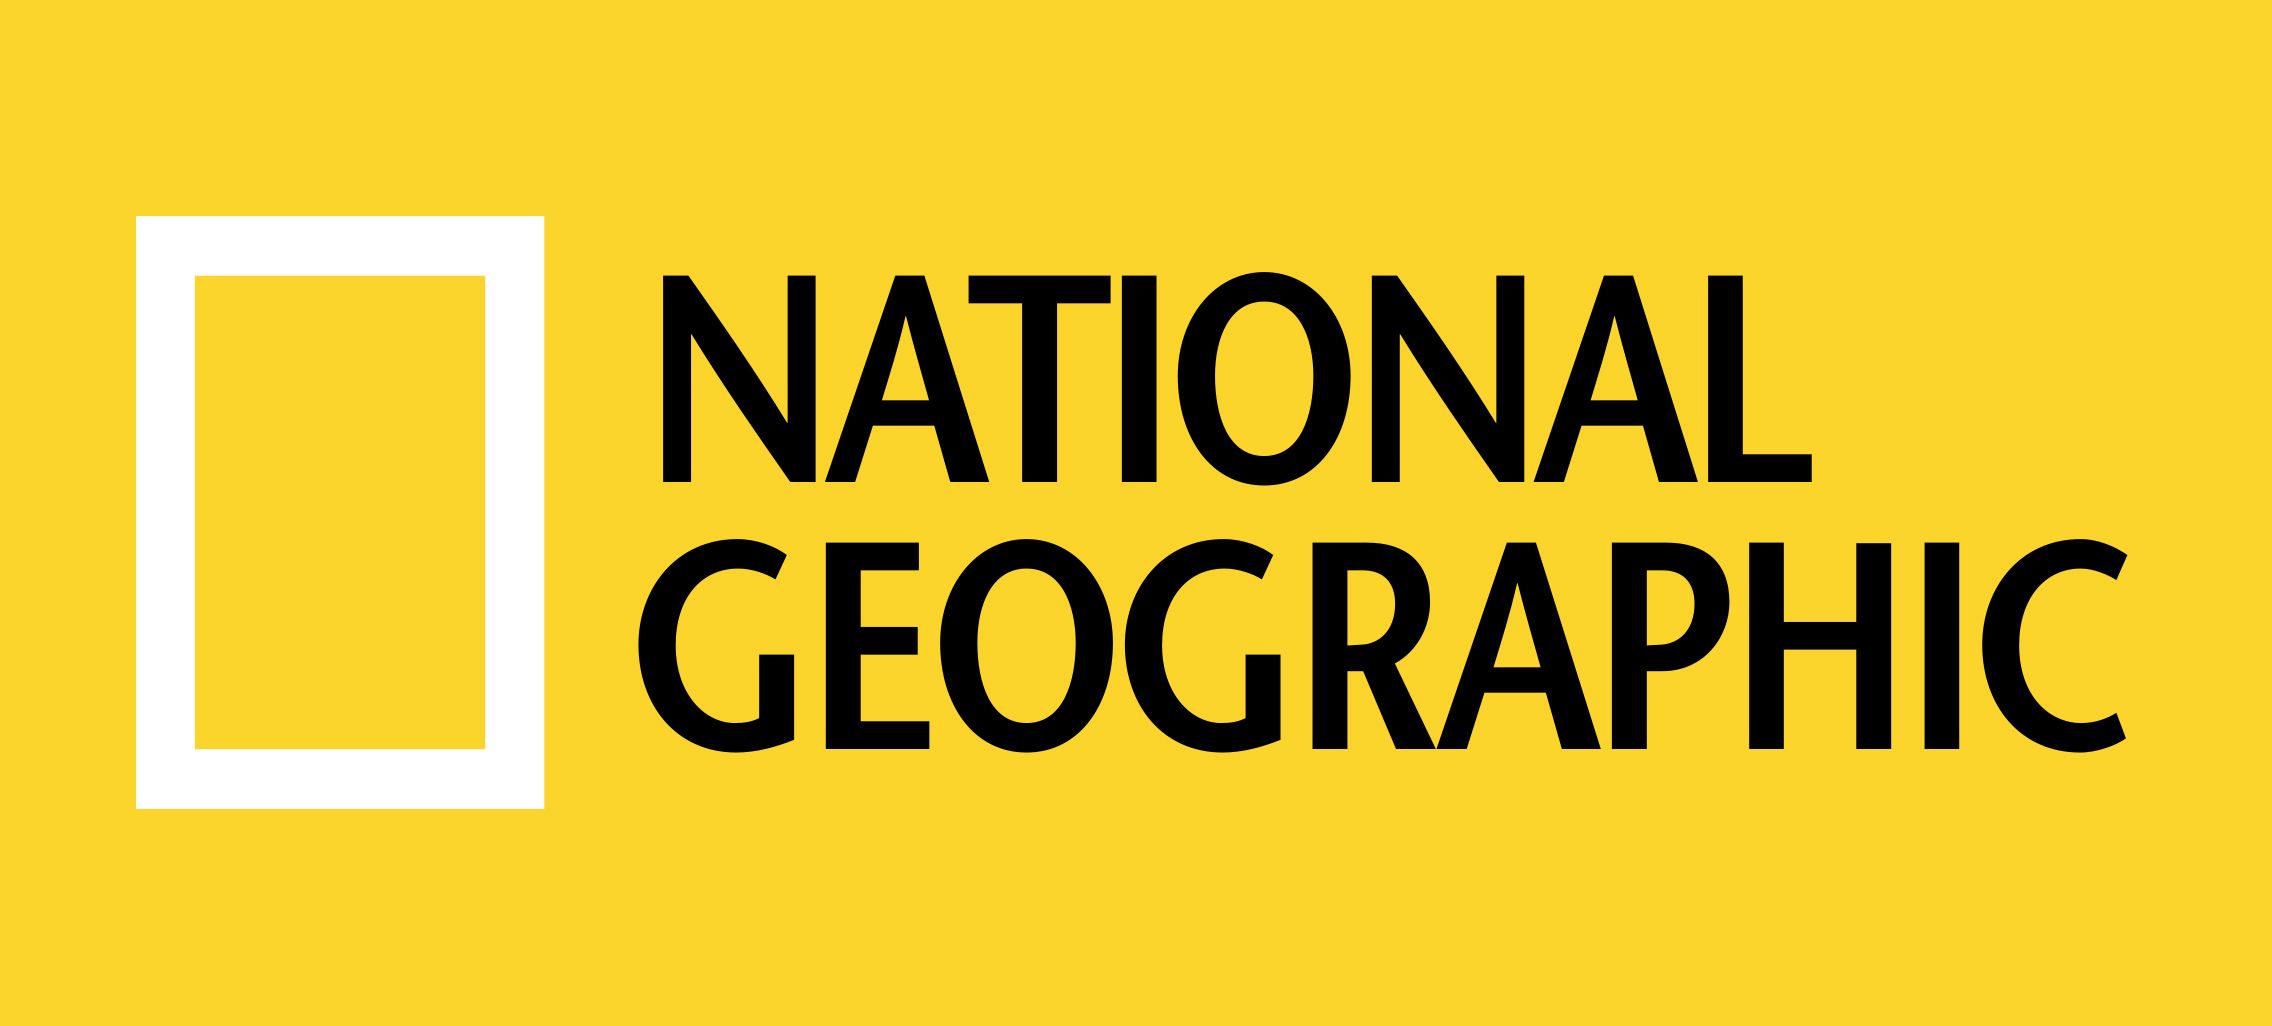 National Geographic Logo - National Geographic Logo, National Geographic Symbol, Meaning ...